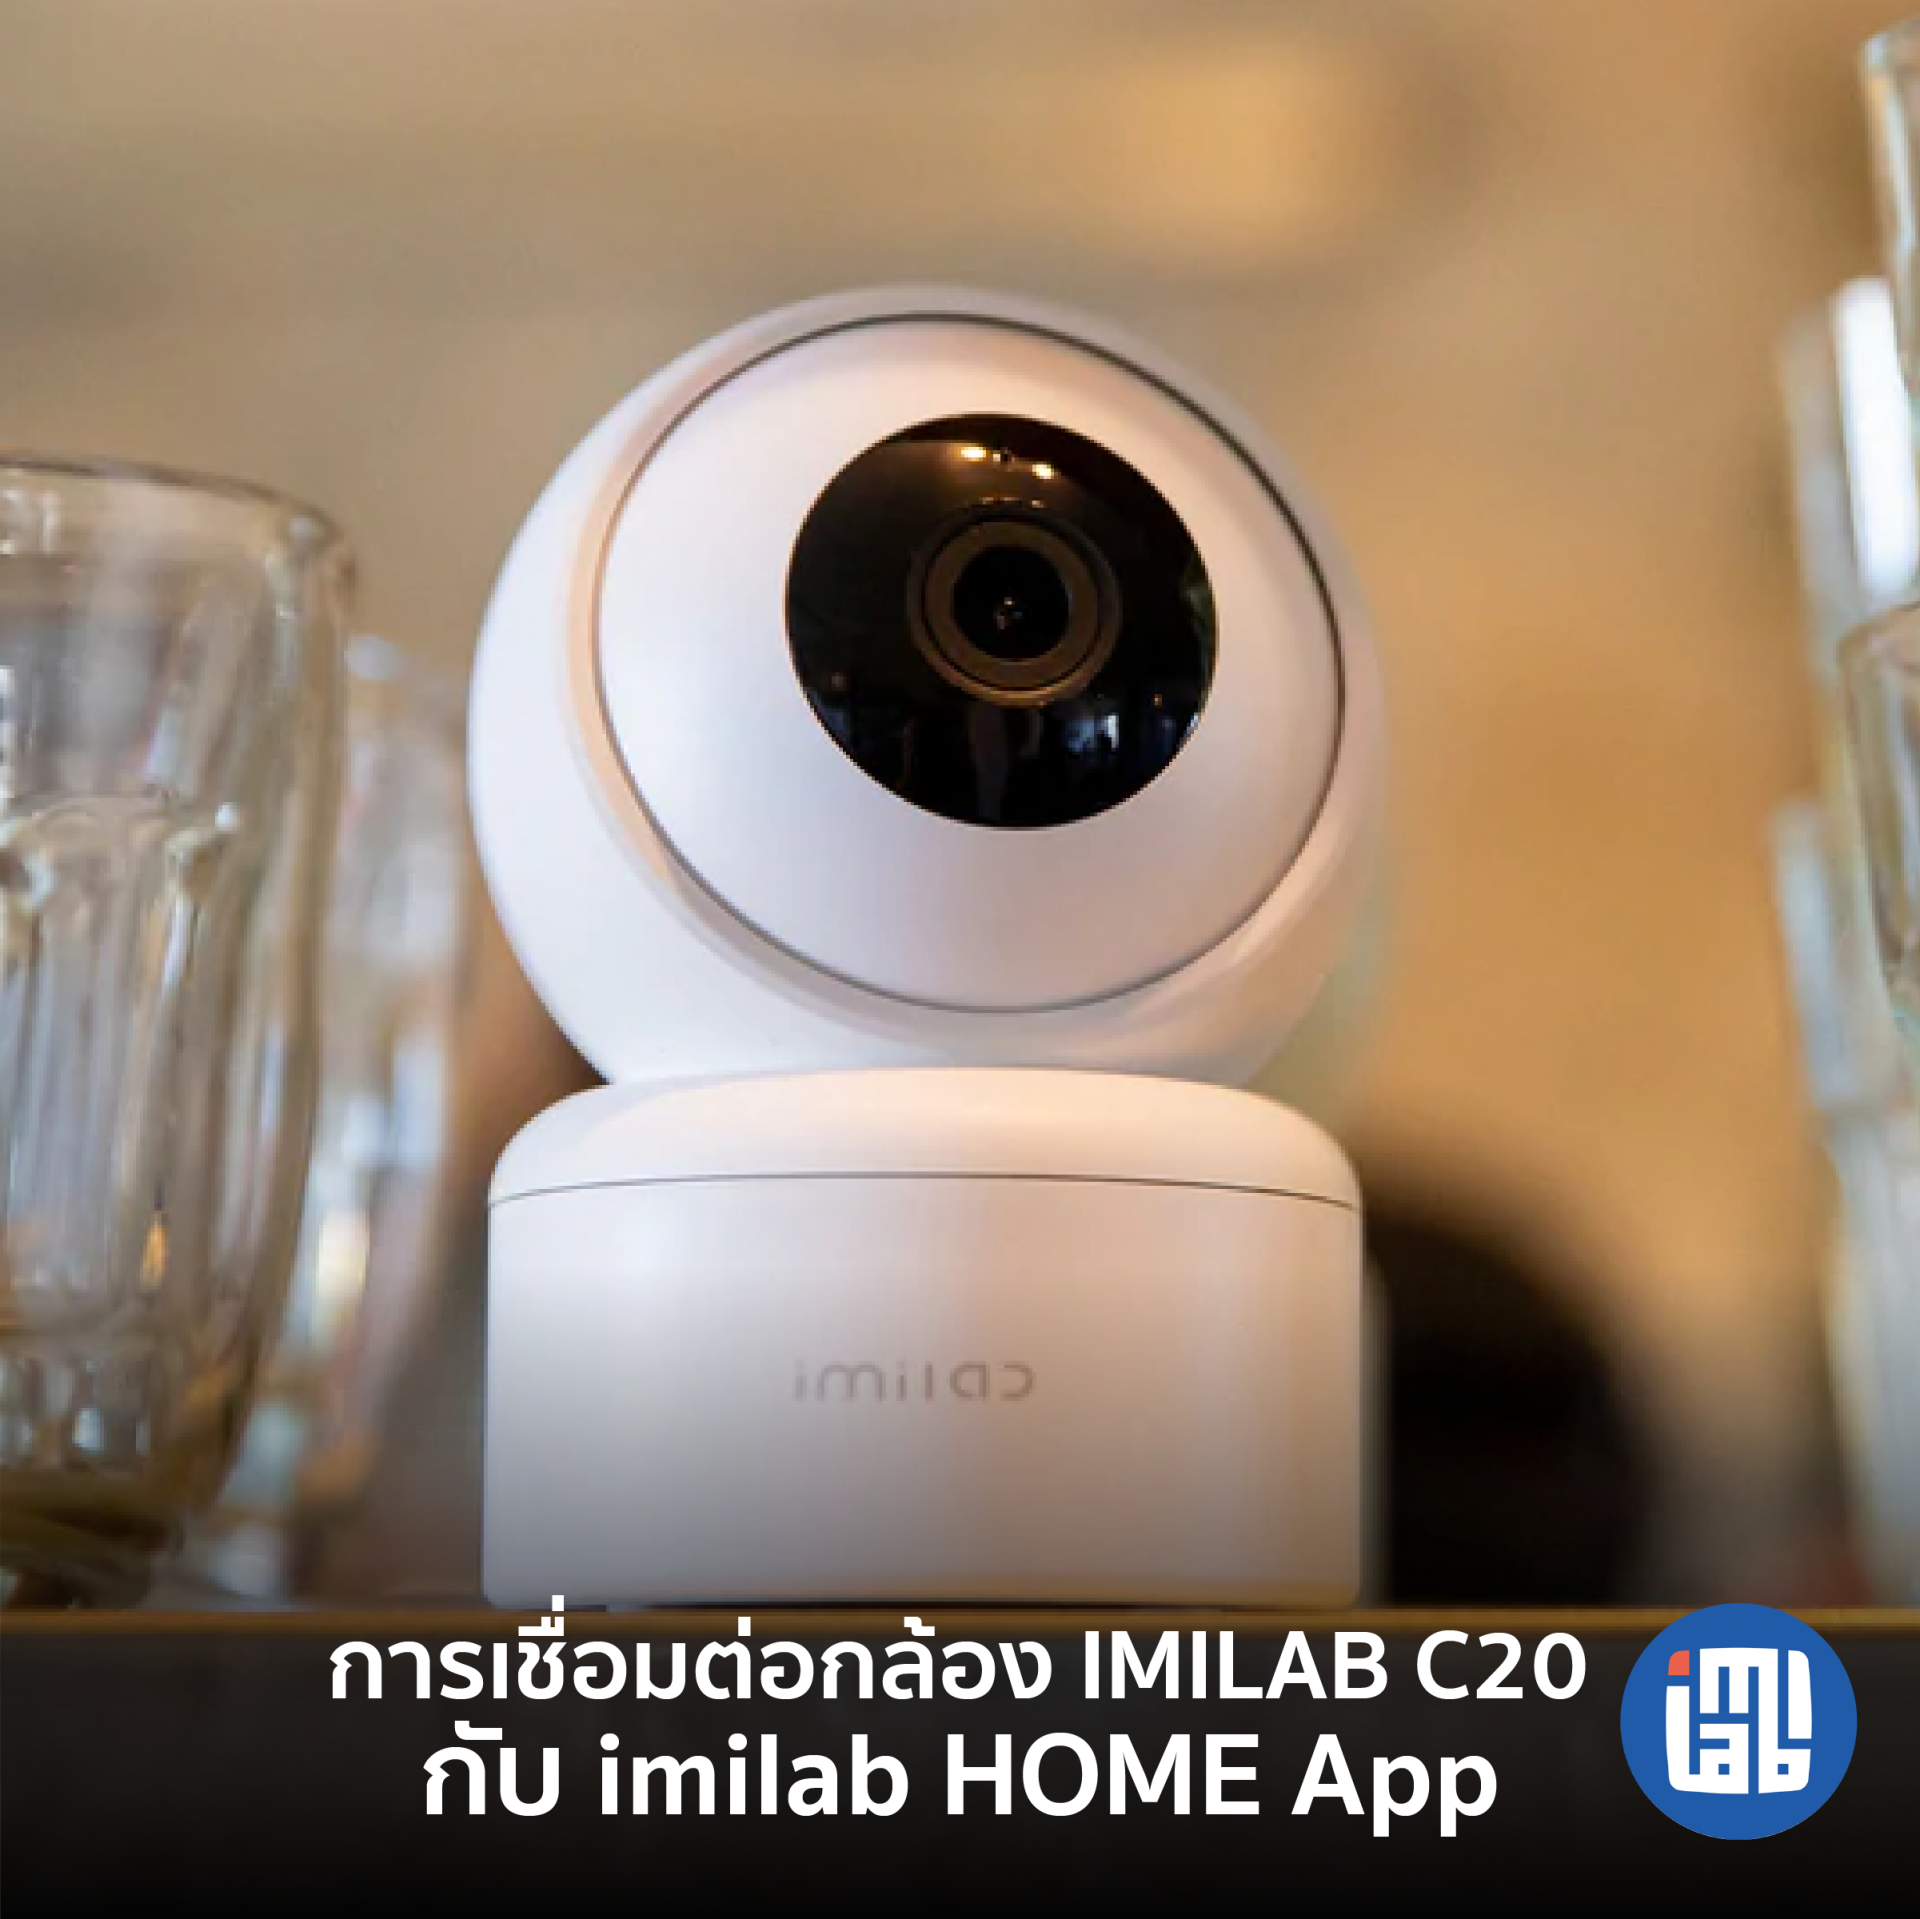 คู่มือการเชื่อมต่อ IMILAB C20 กับ IMILAB Home